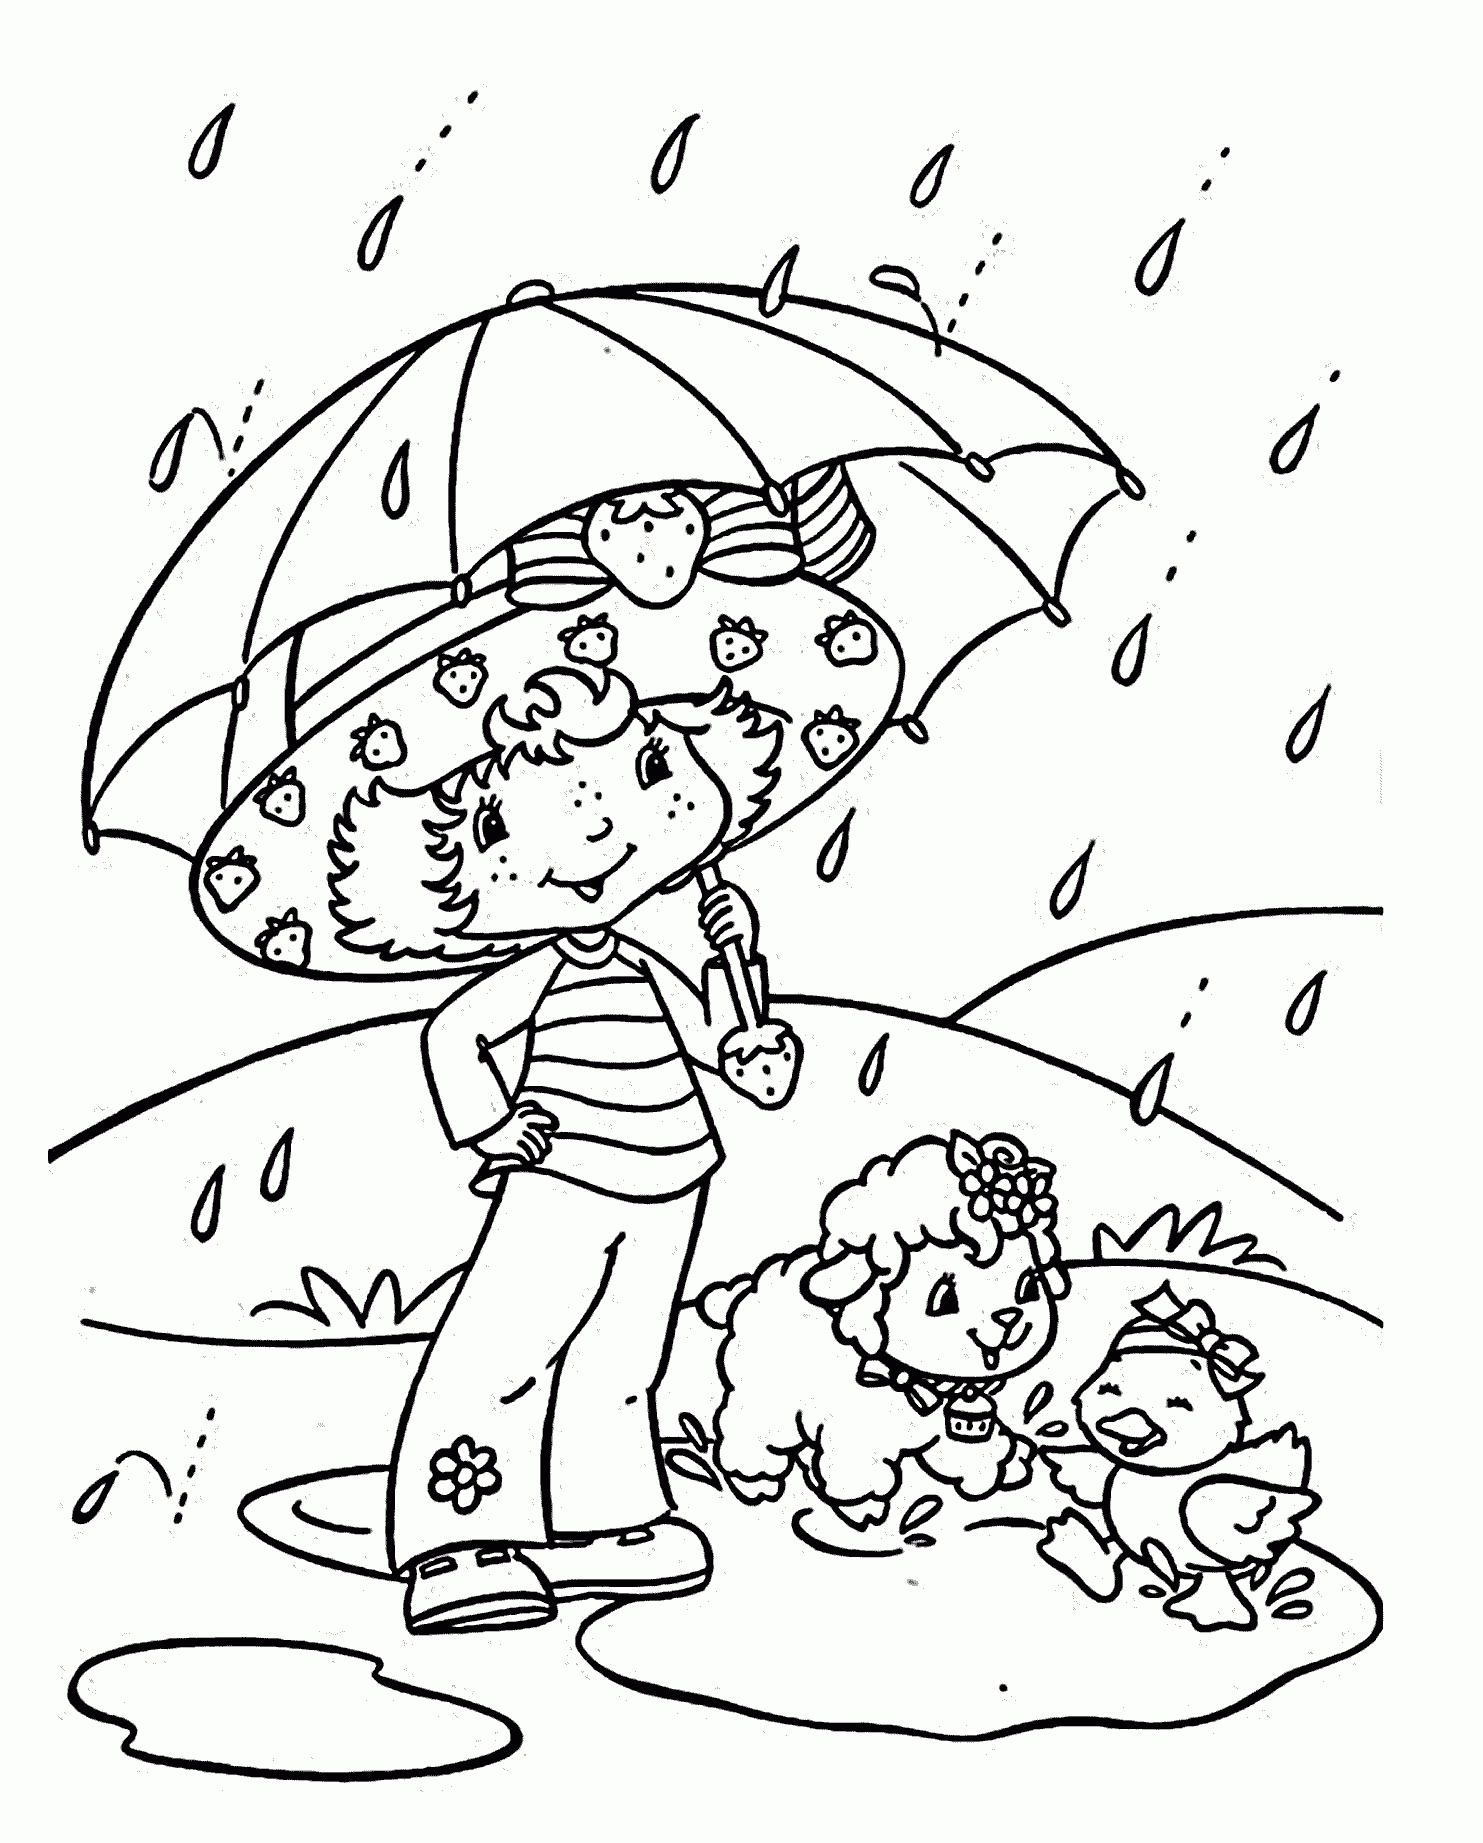 Strawberry Shortcake Coloring Pages Rain, Printable Free concernant Coloriage Charlotte Aux Fraises Et Ses Amies